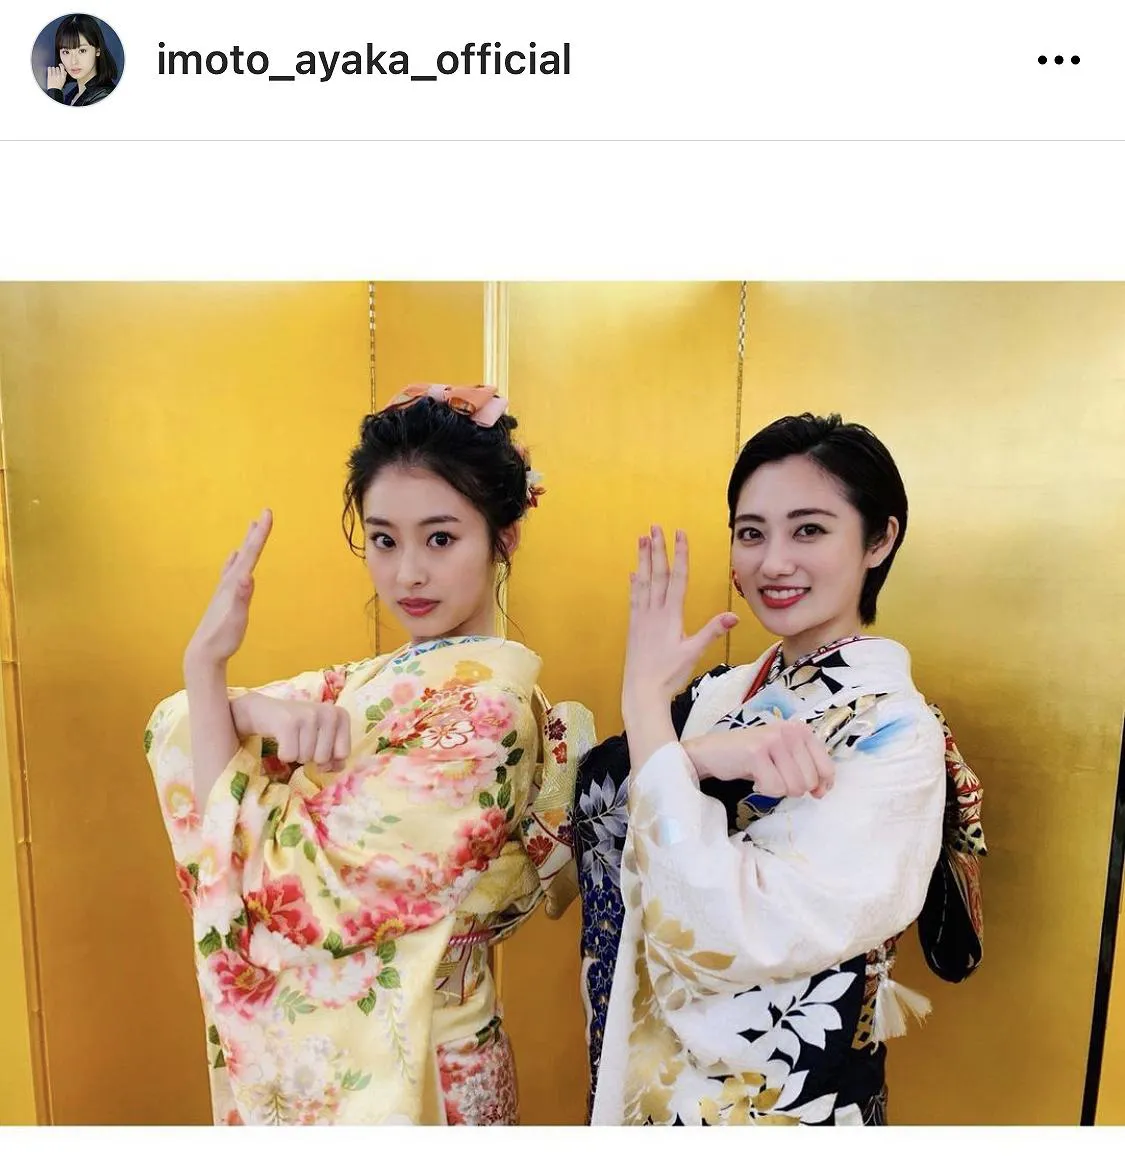 ※画像は井本彩花(imoto_ayaka_official)公式Instagramのスクリーンショット